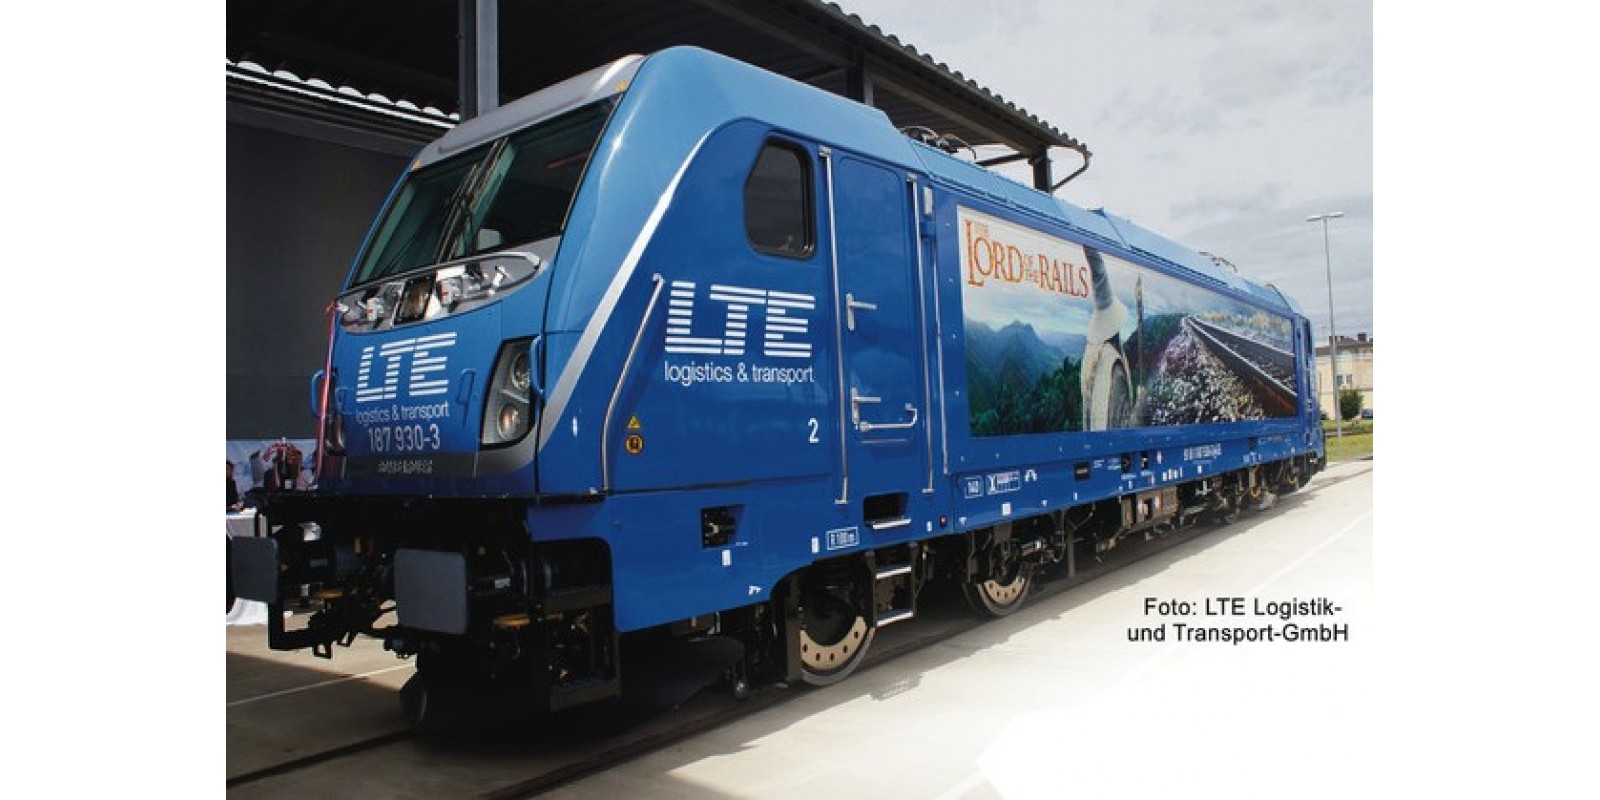 FL738973 - Electric locomotive class 187, LTE